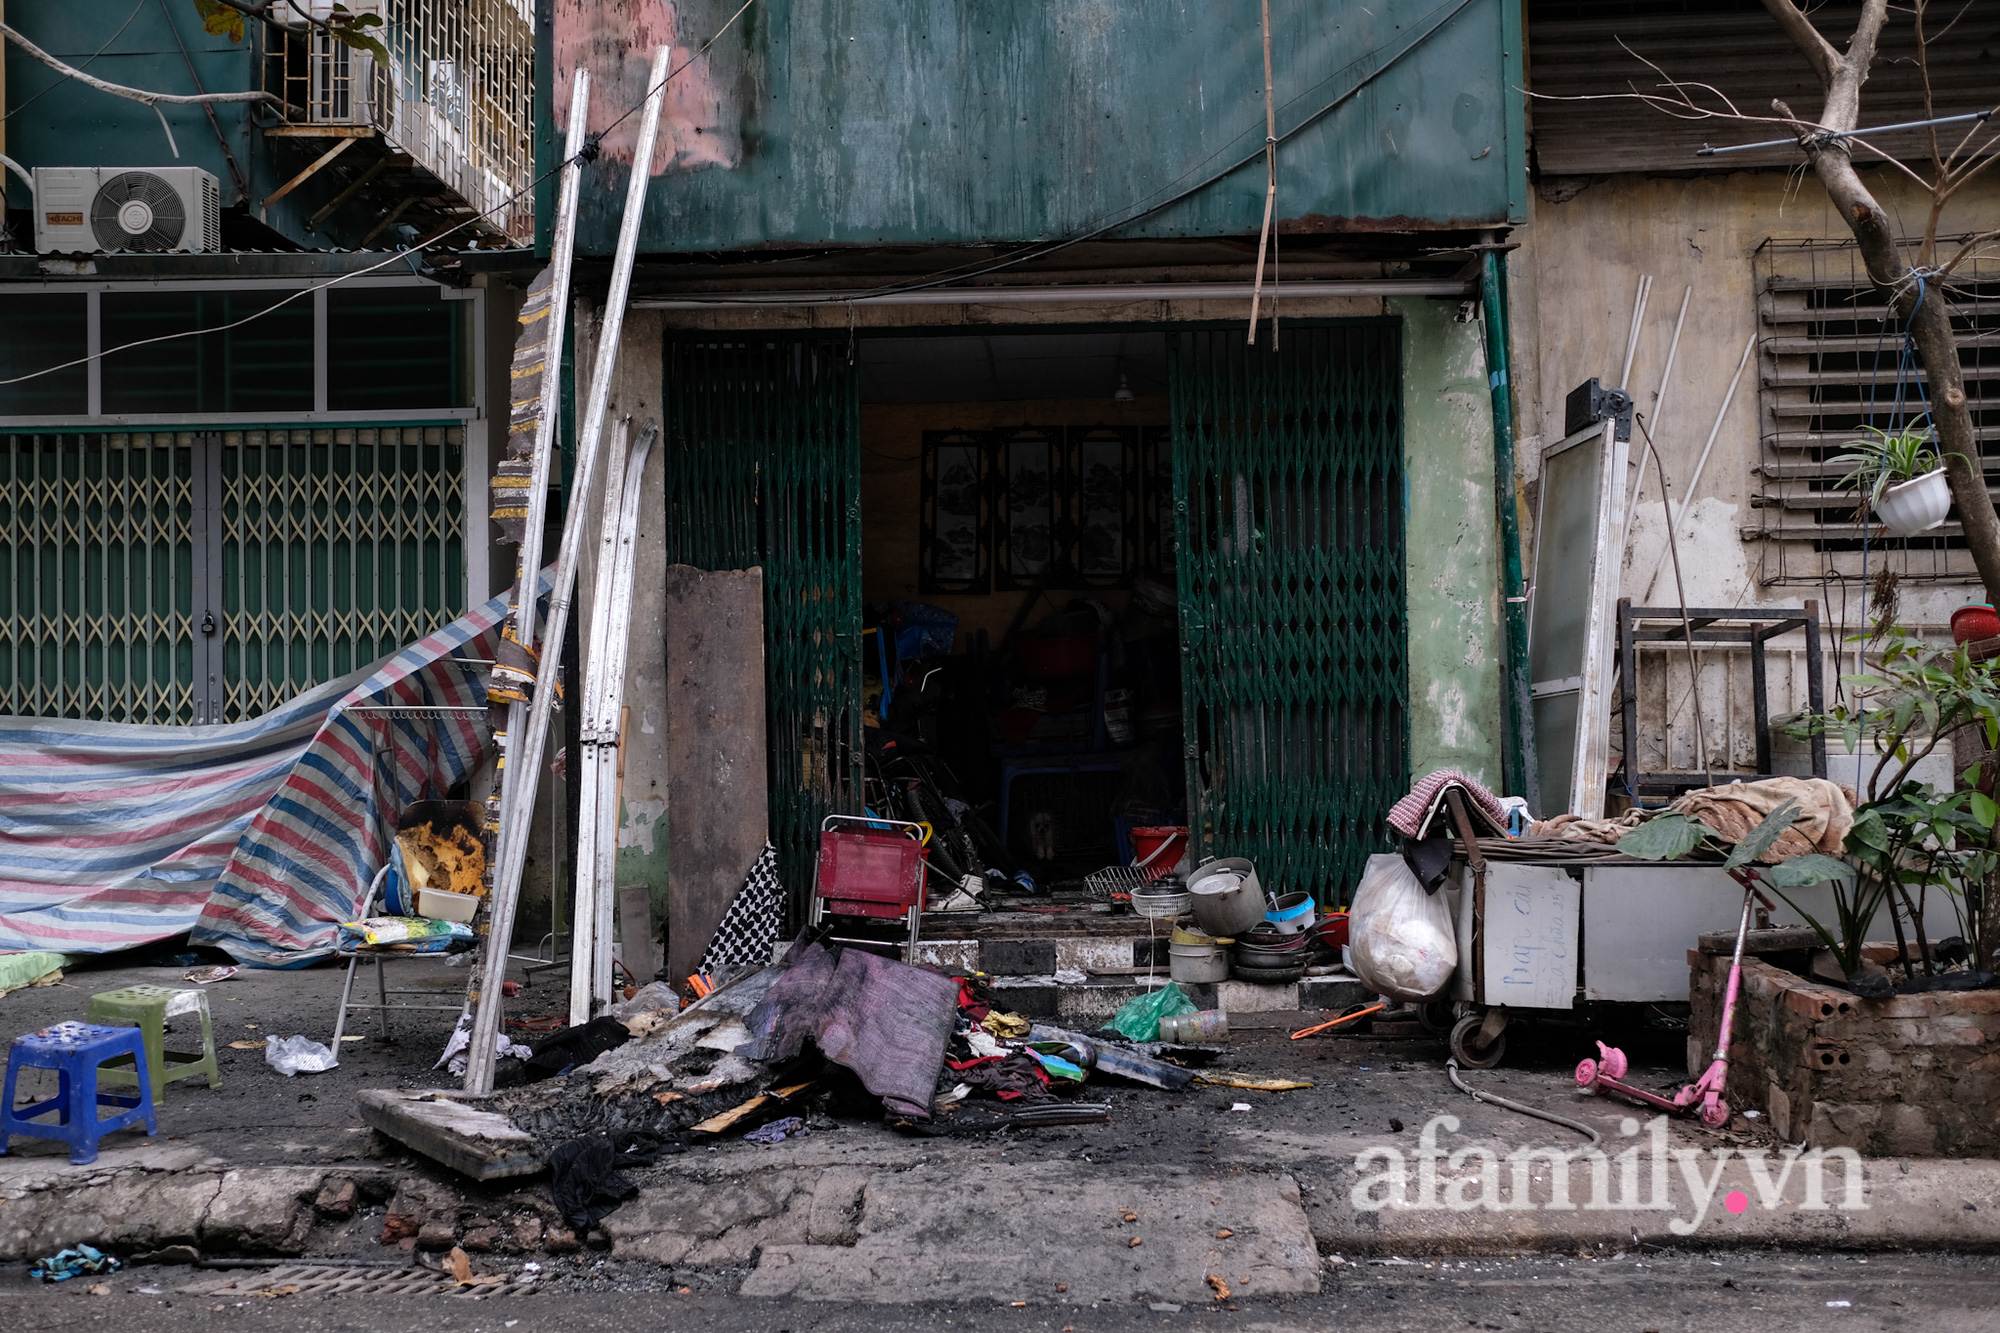 Vụ bé gái mắc kẹt trong ngôi nhà cháy ở Hà Nội: Anh thợ sửa điều hòa có đôi mắt cười kể về cảm giác “không thể nào tả được” bên khung cửa sổ sinh-tử - ảnh 1